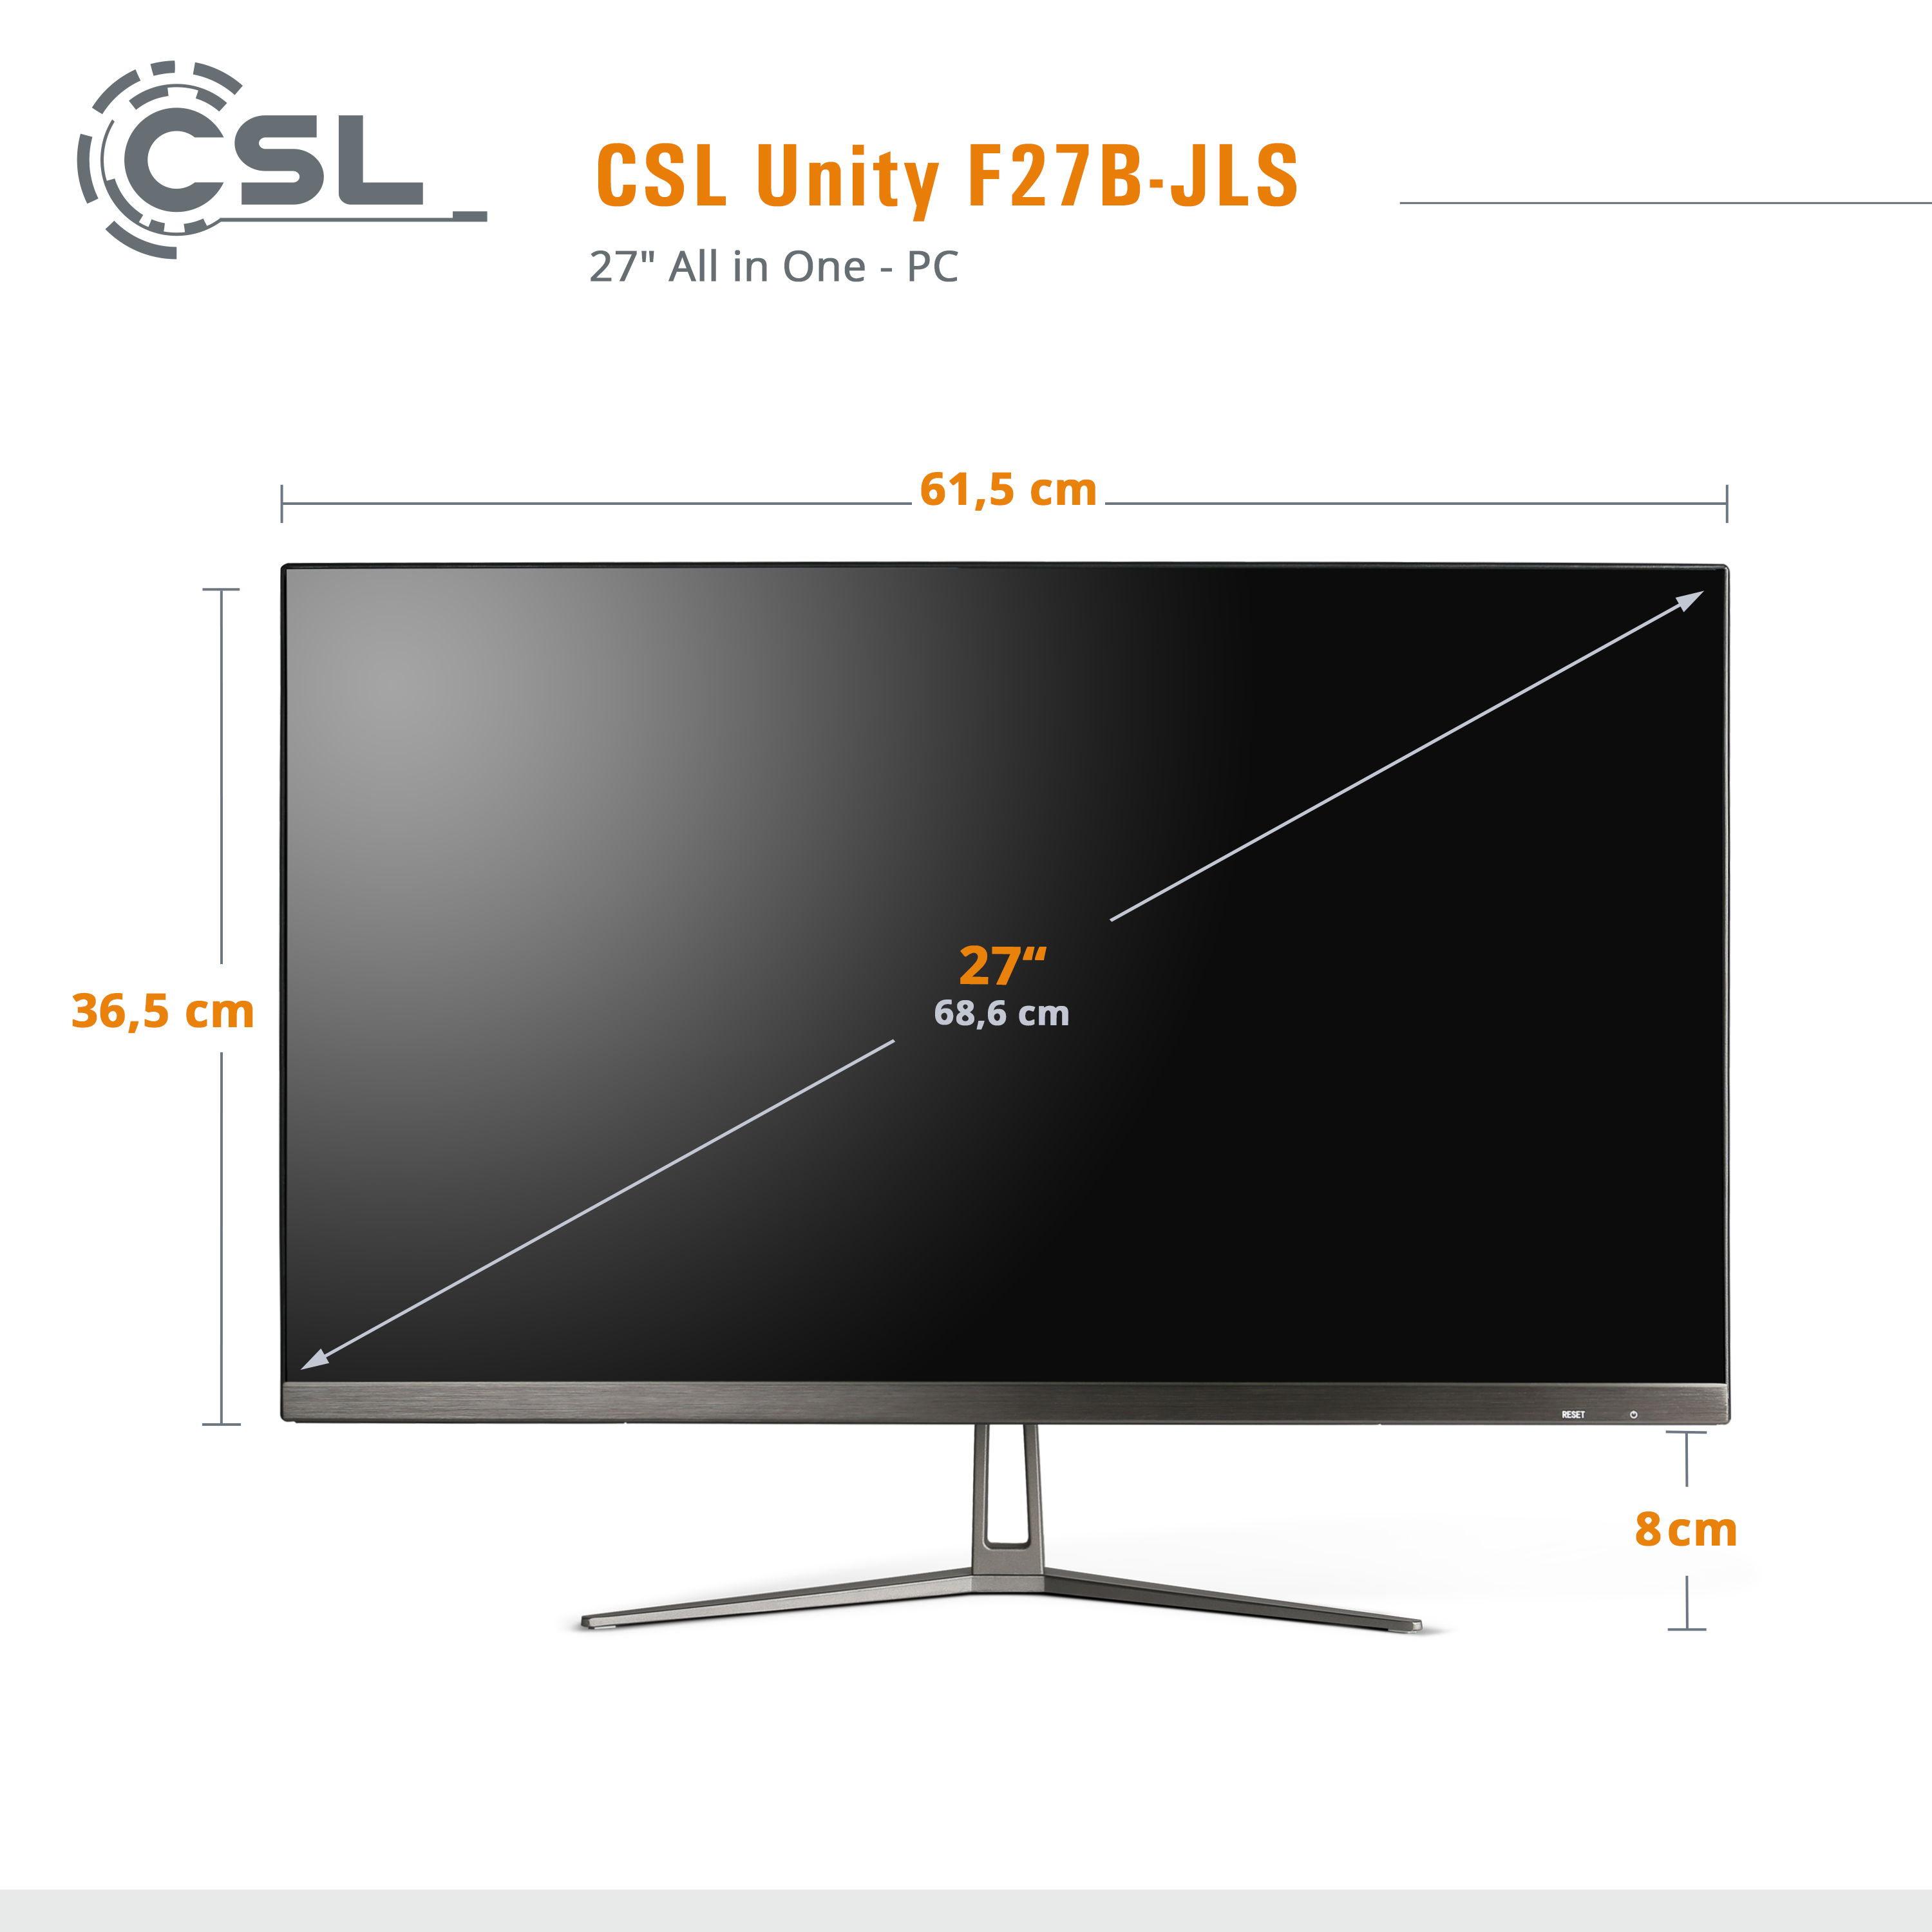 CSL Unity F27B-JLS RAM, Graphics, RAM GB GB 8 SSD, UHD 8 mit 10 Pentium Intel® GB Display, GB Home, 2000 / / schwarz 2000 Zoll Win All-in-One-PC / 27